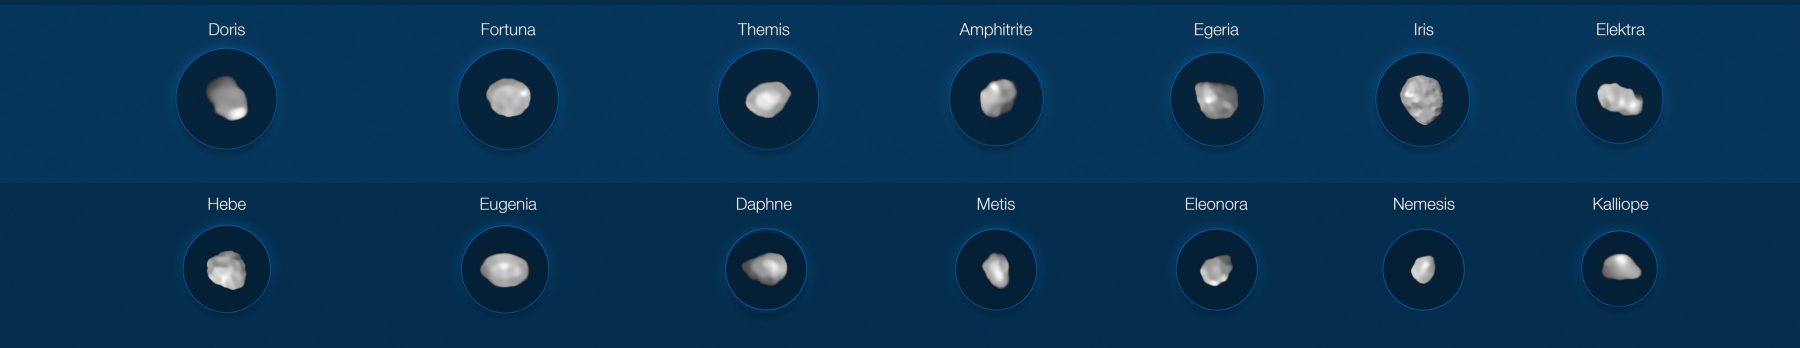 Следующая группа сфотографированных астероидов. Предоставлено: М. Корнмессер, Вернацца и др. (ESO); Алгоритм MISTRAL (ONERA / CNRS)